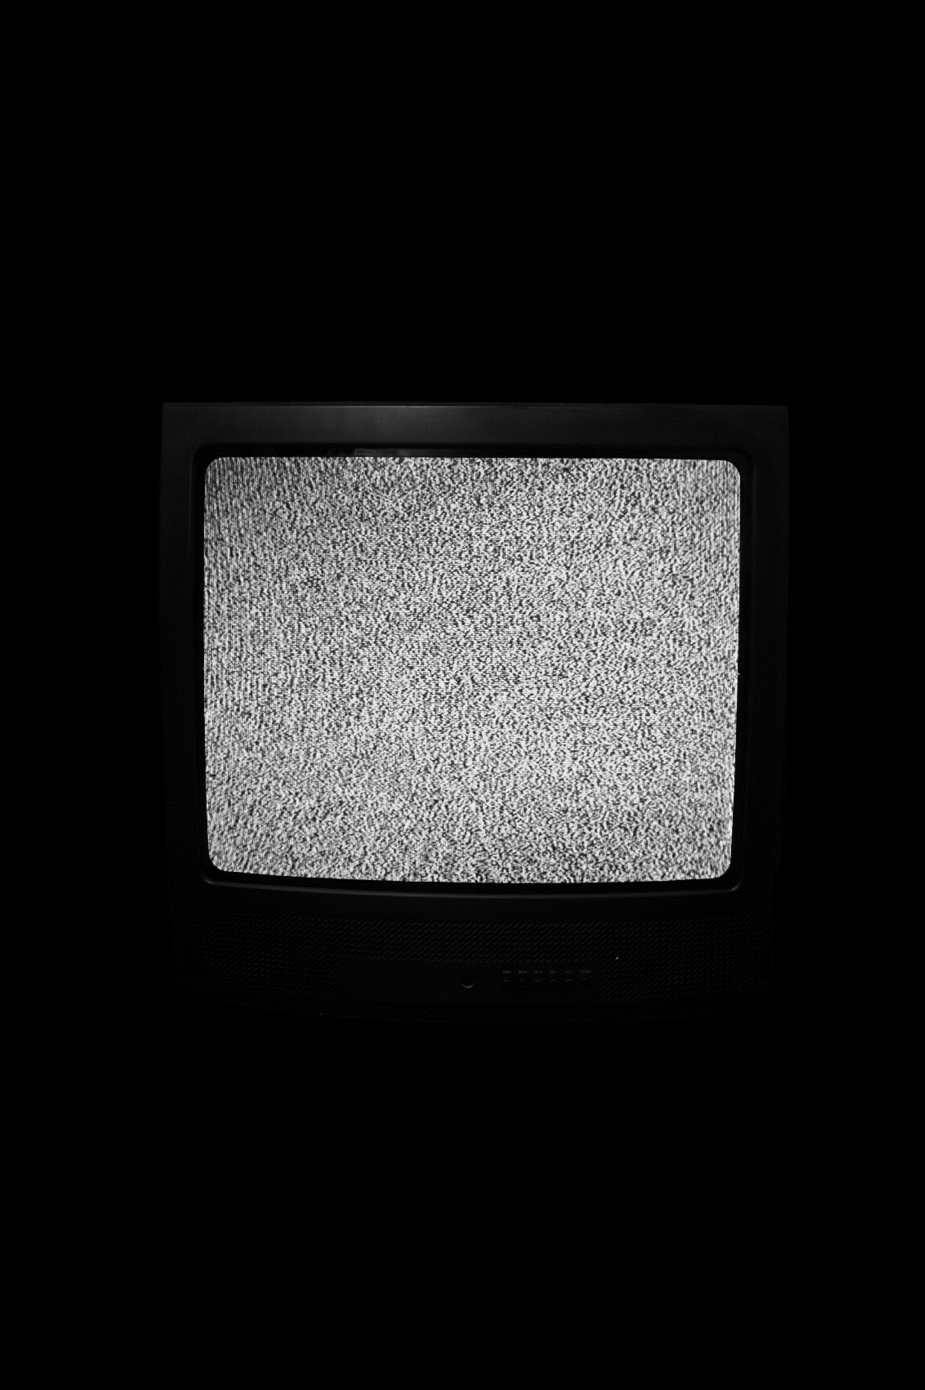 Шумы в темноте. Телевизор с помехами. Экран телевизора. Старый телевизор. Старый телевизор с помехами.